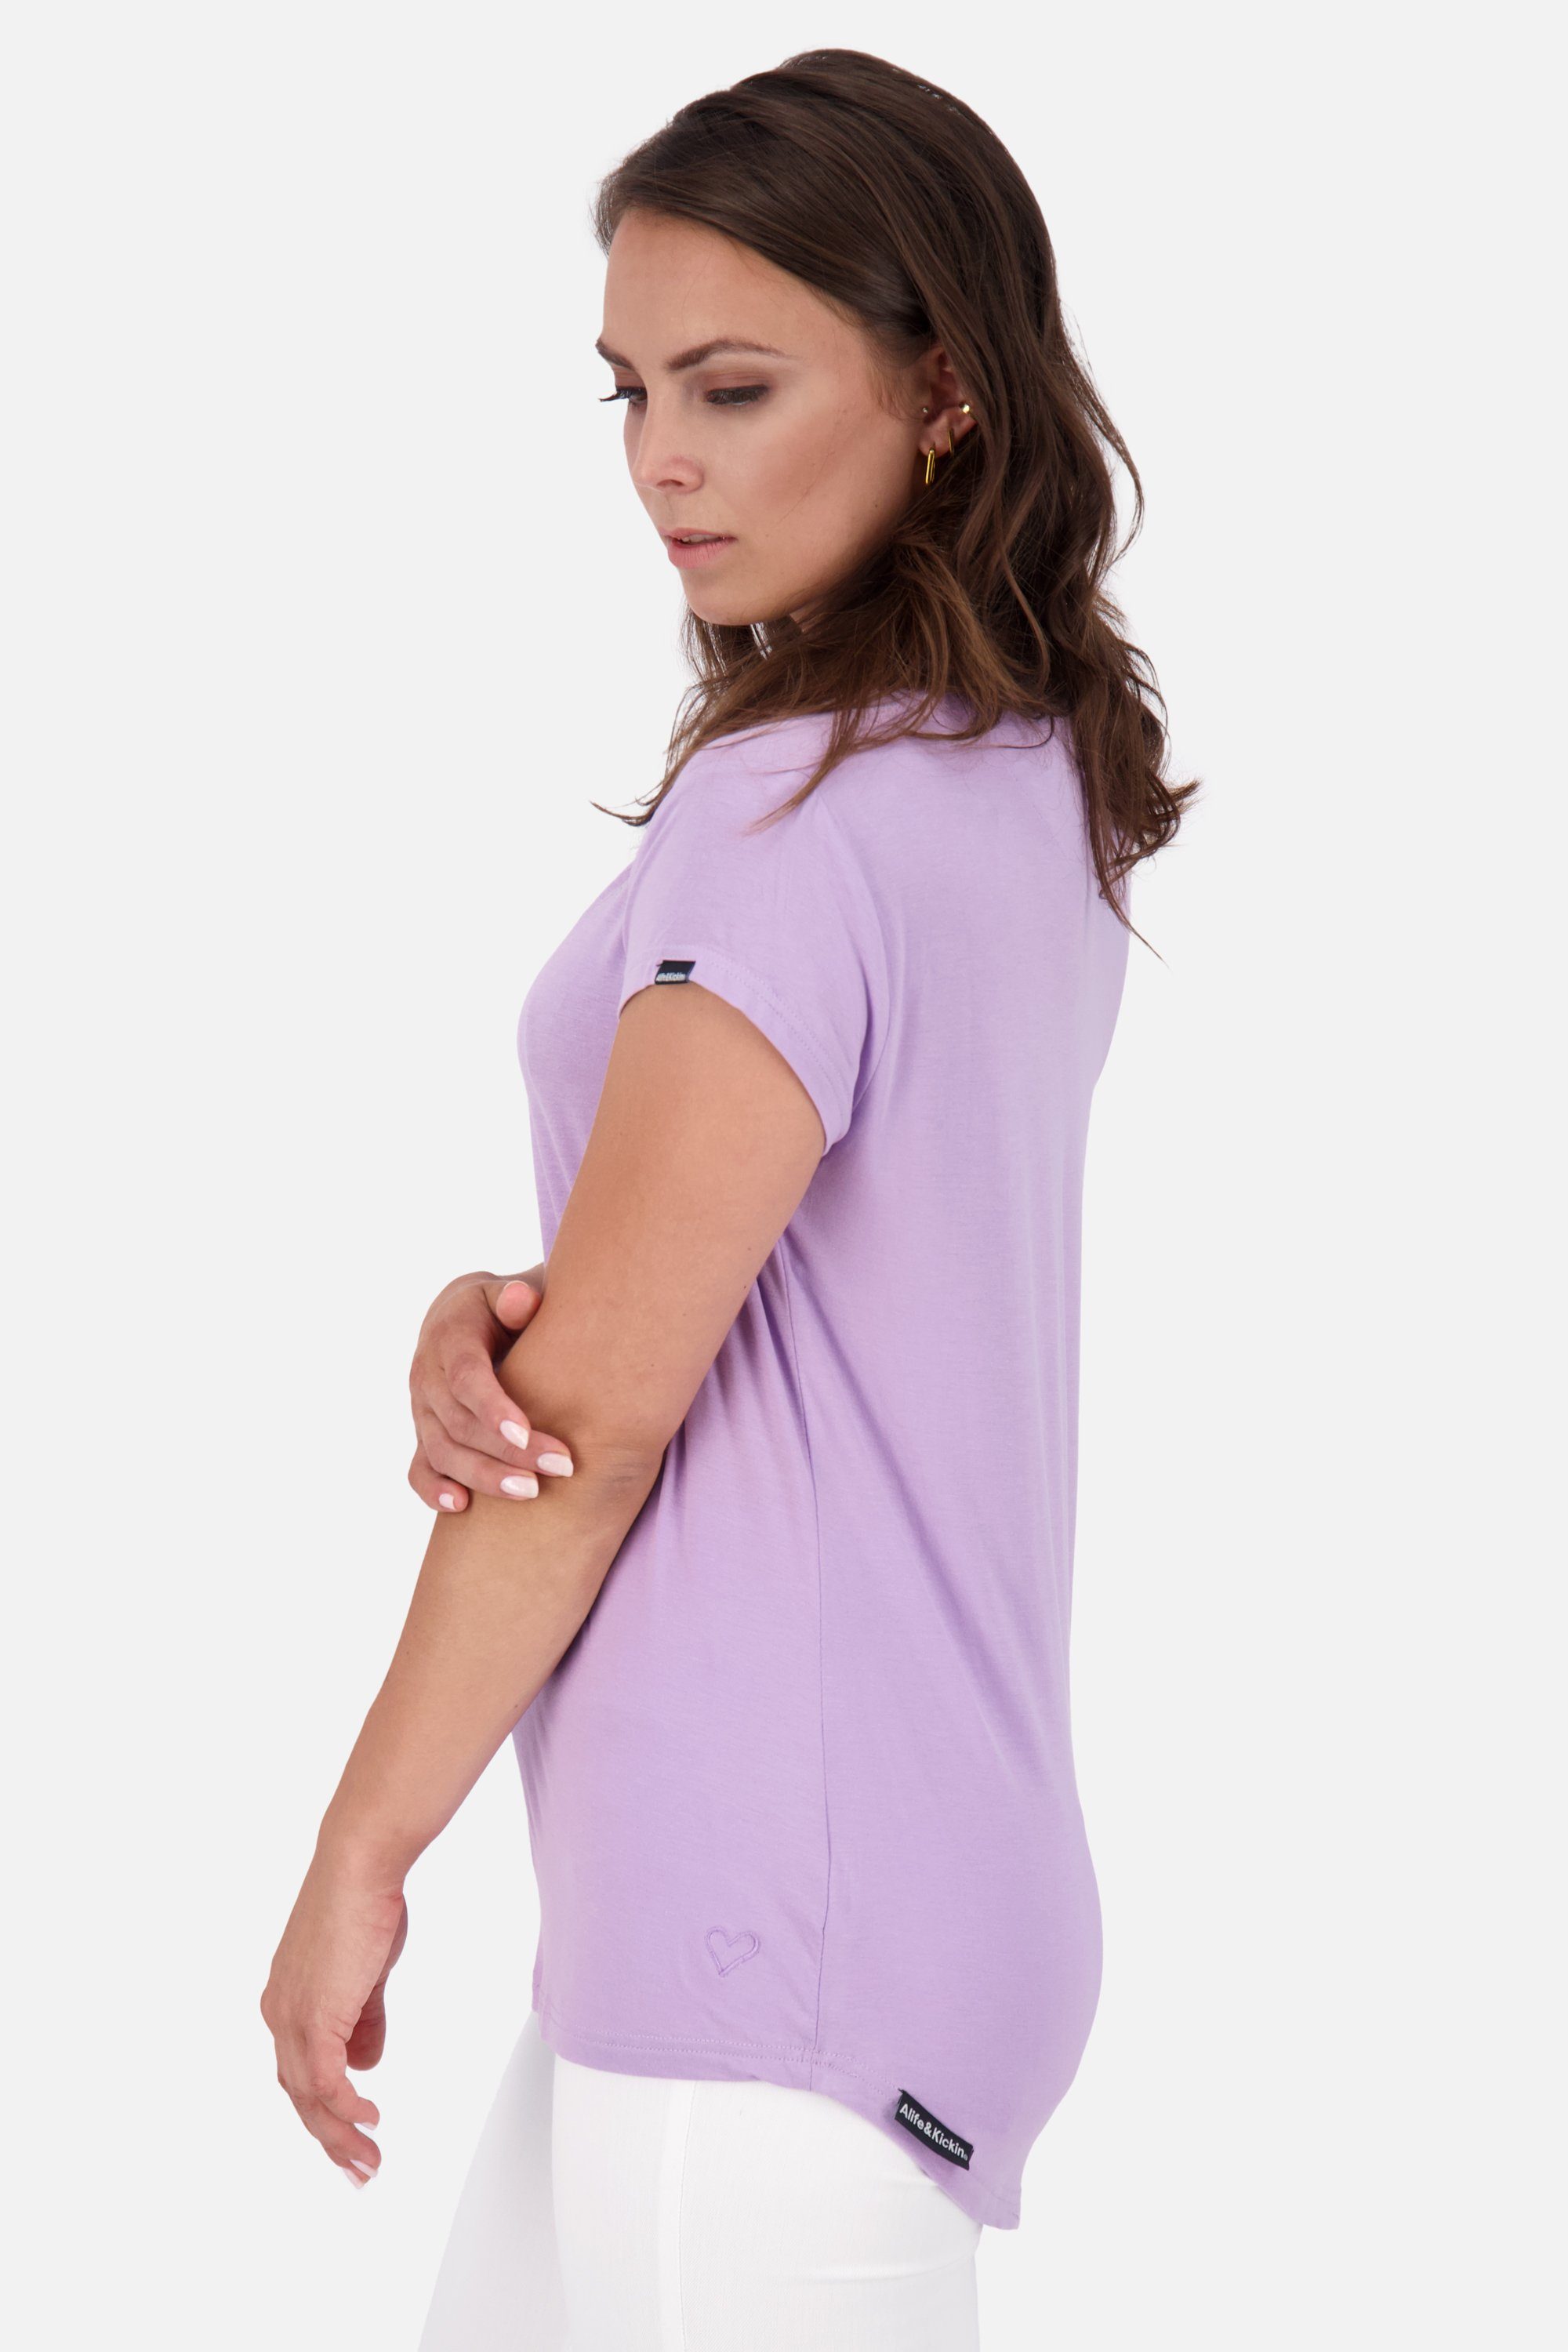 MimmyAK Kickin Shirt Kurzarmshirt, digital Rundhalsshirt lavender Shirt A & Alife Damen